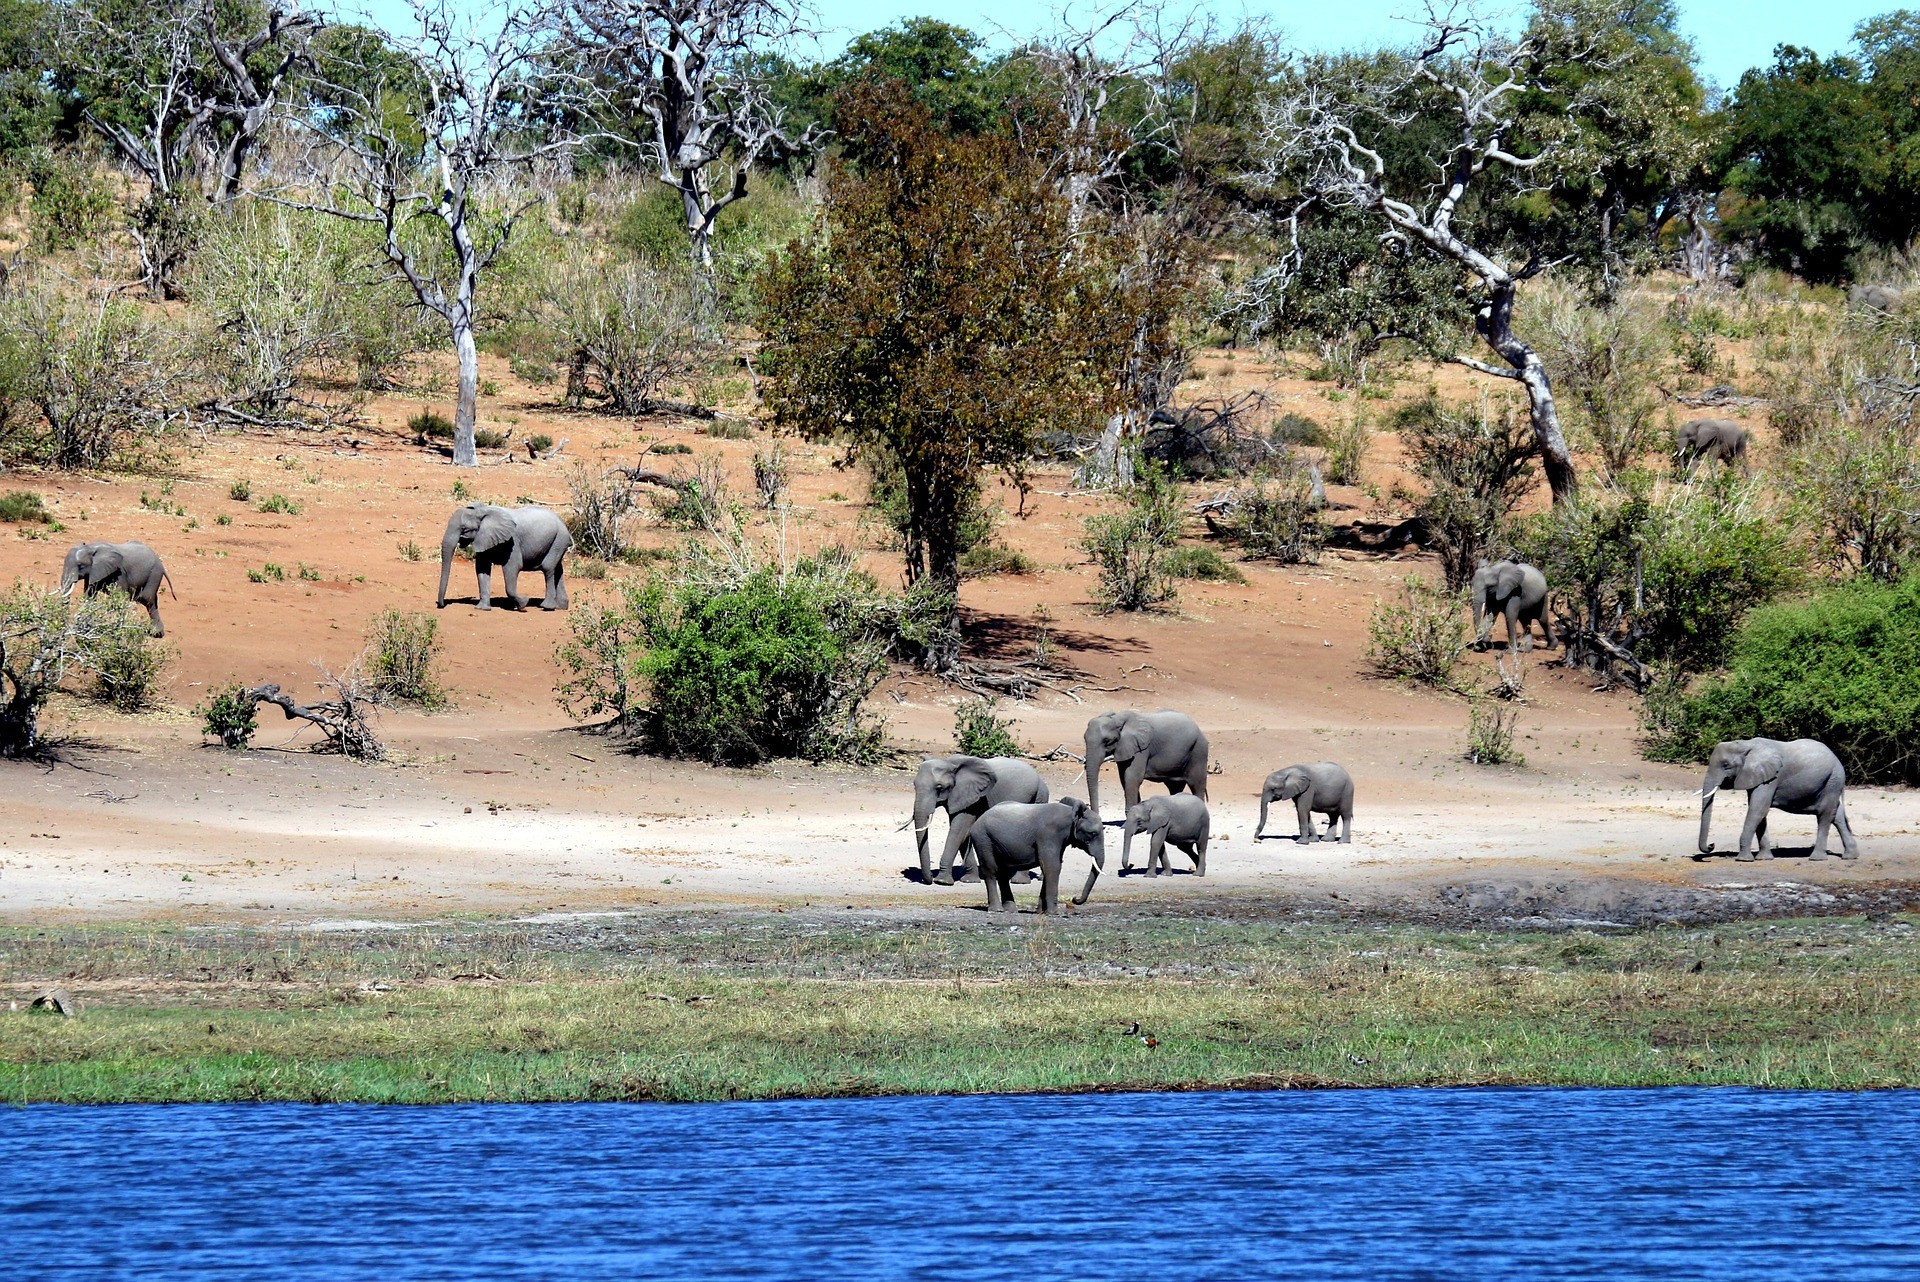 Słonie w afrykańskim krajobrazie pośród drzew